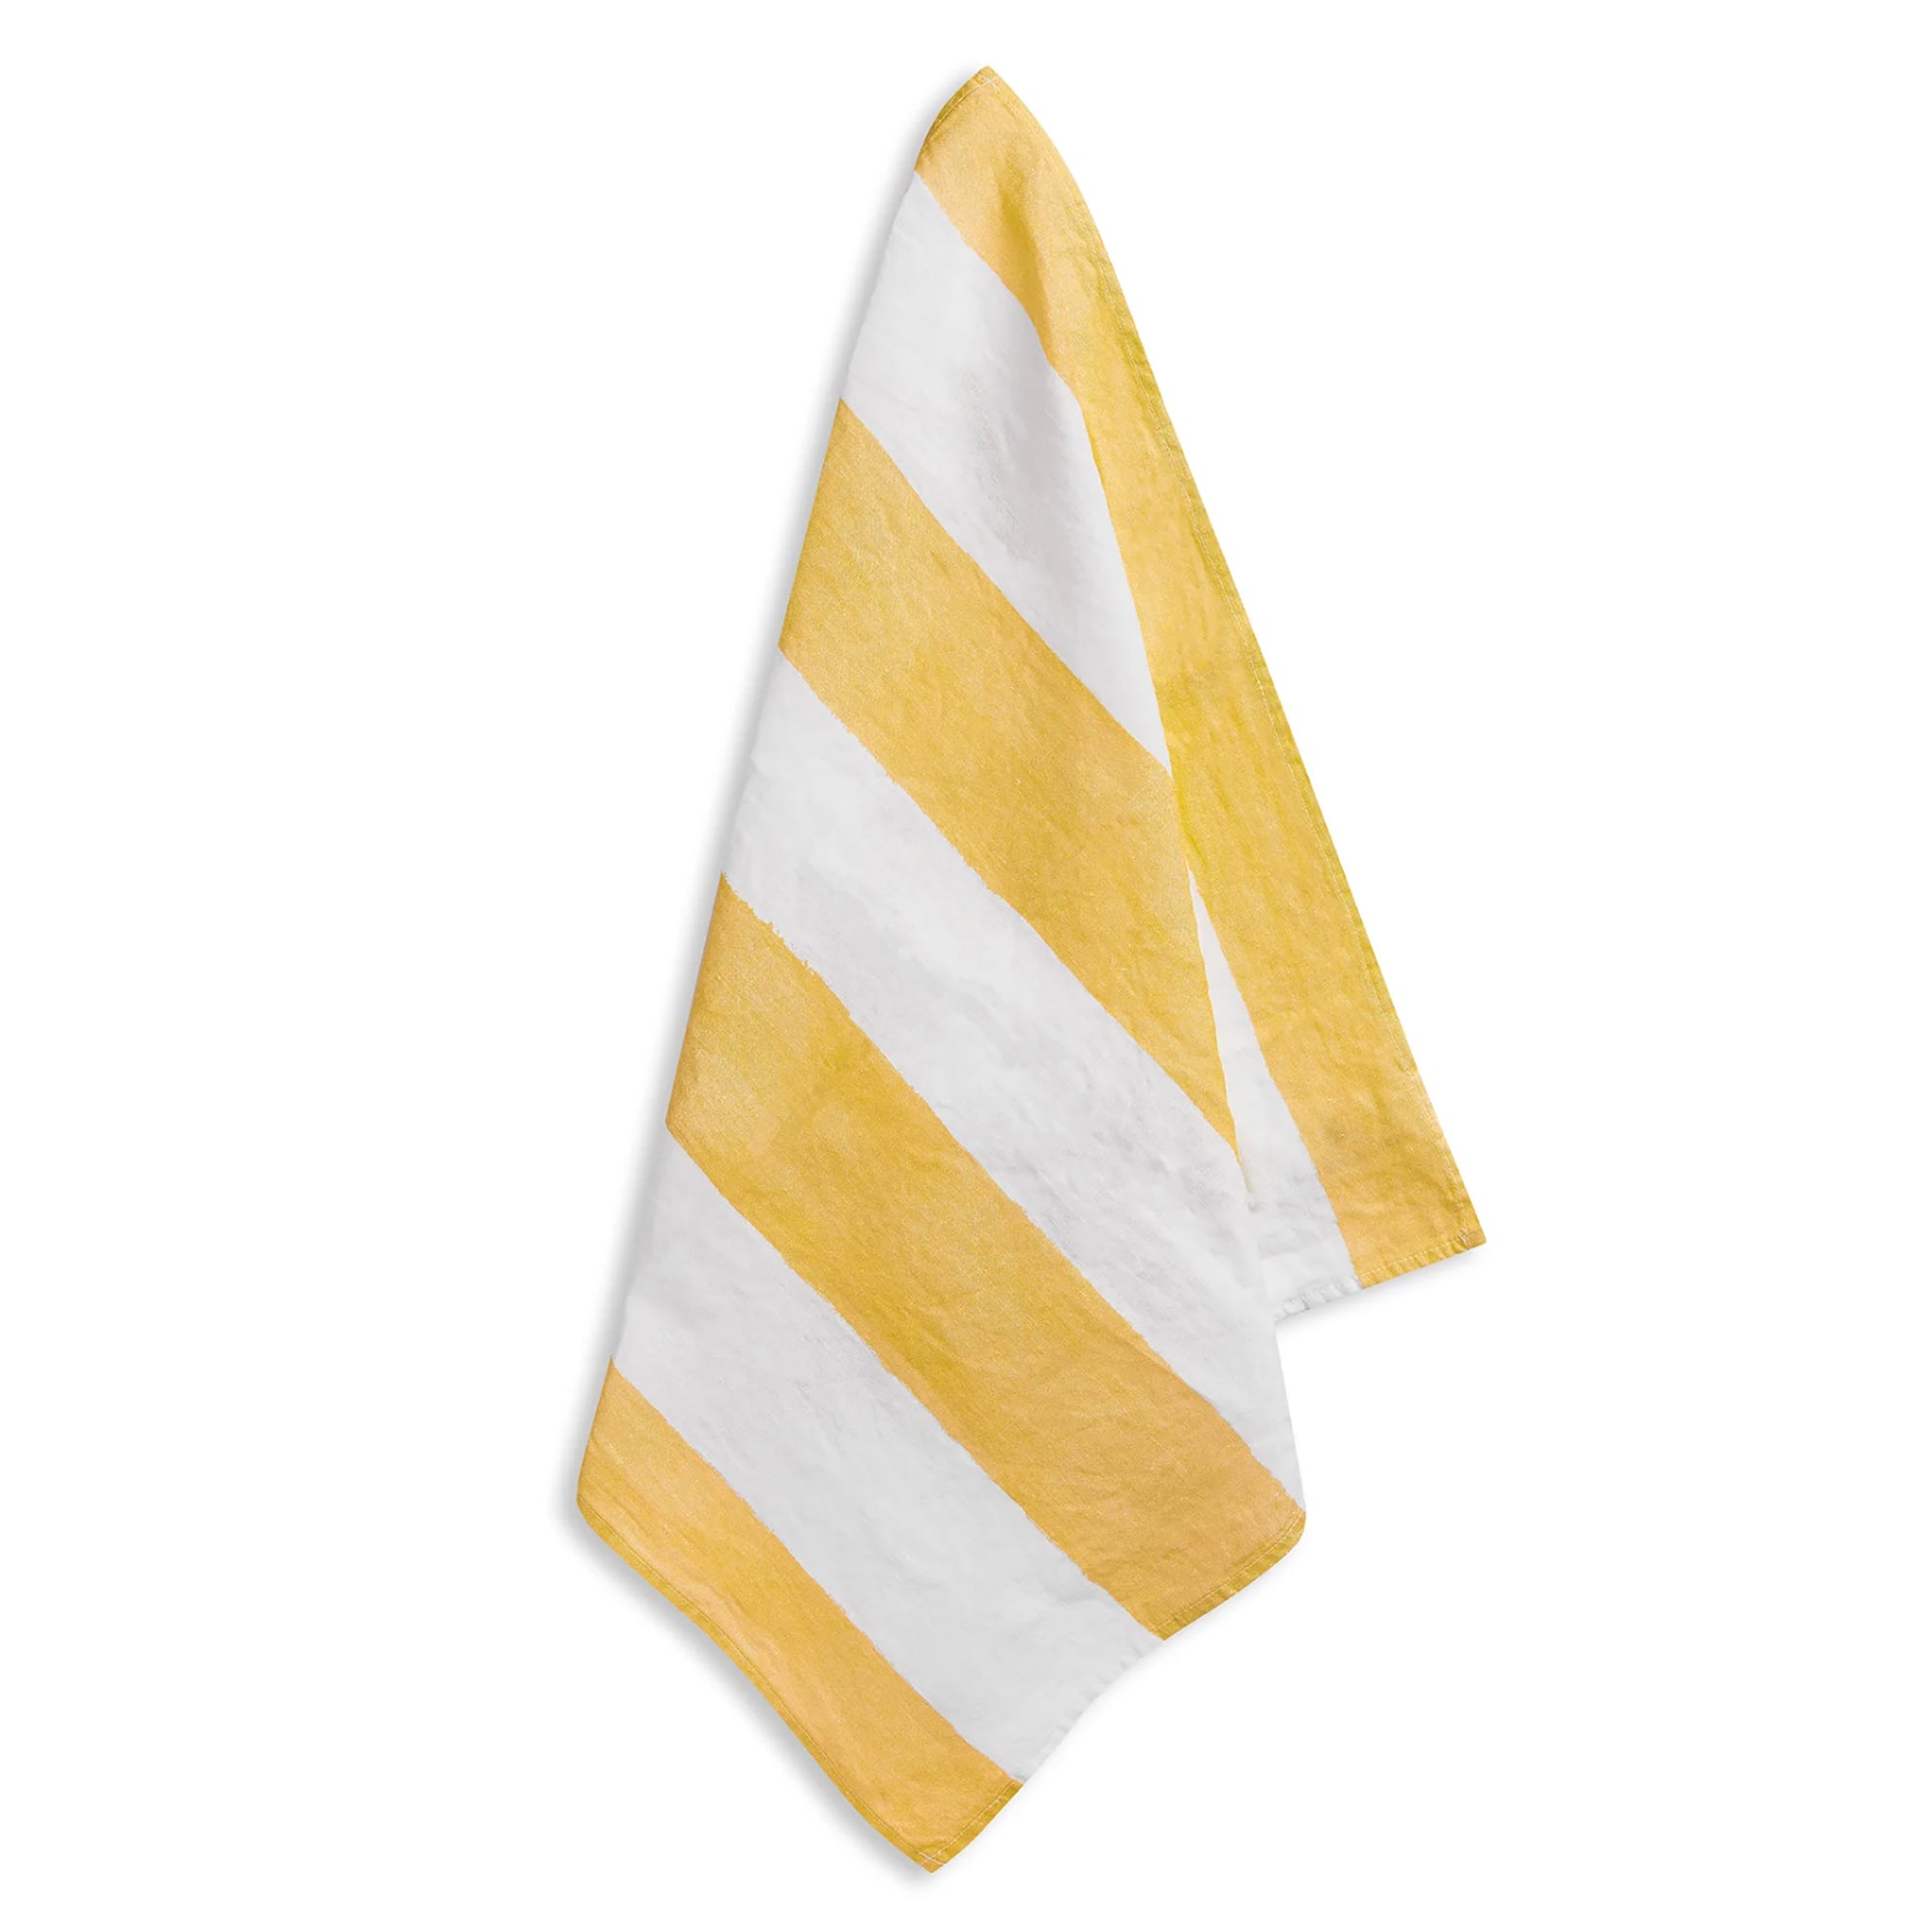 Stripe Linen Napkins - Yellow & White (set of 4)